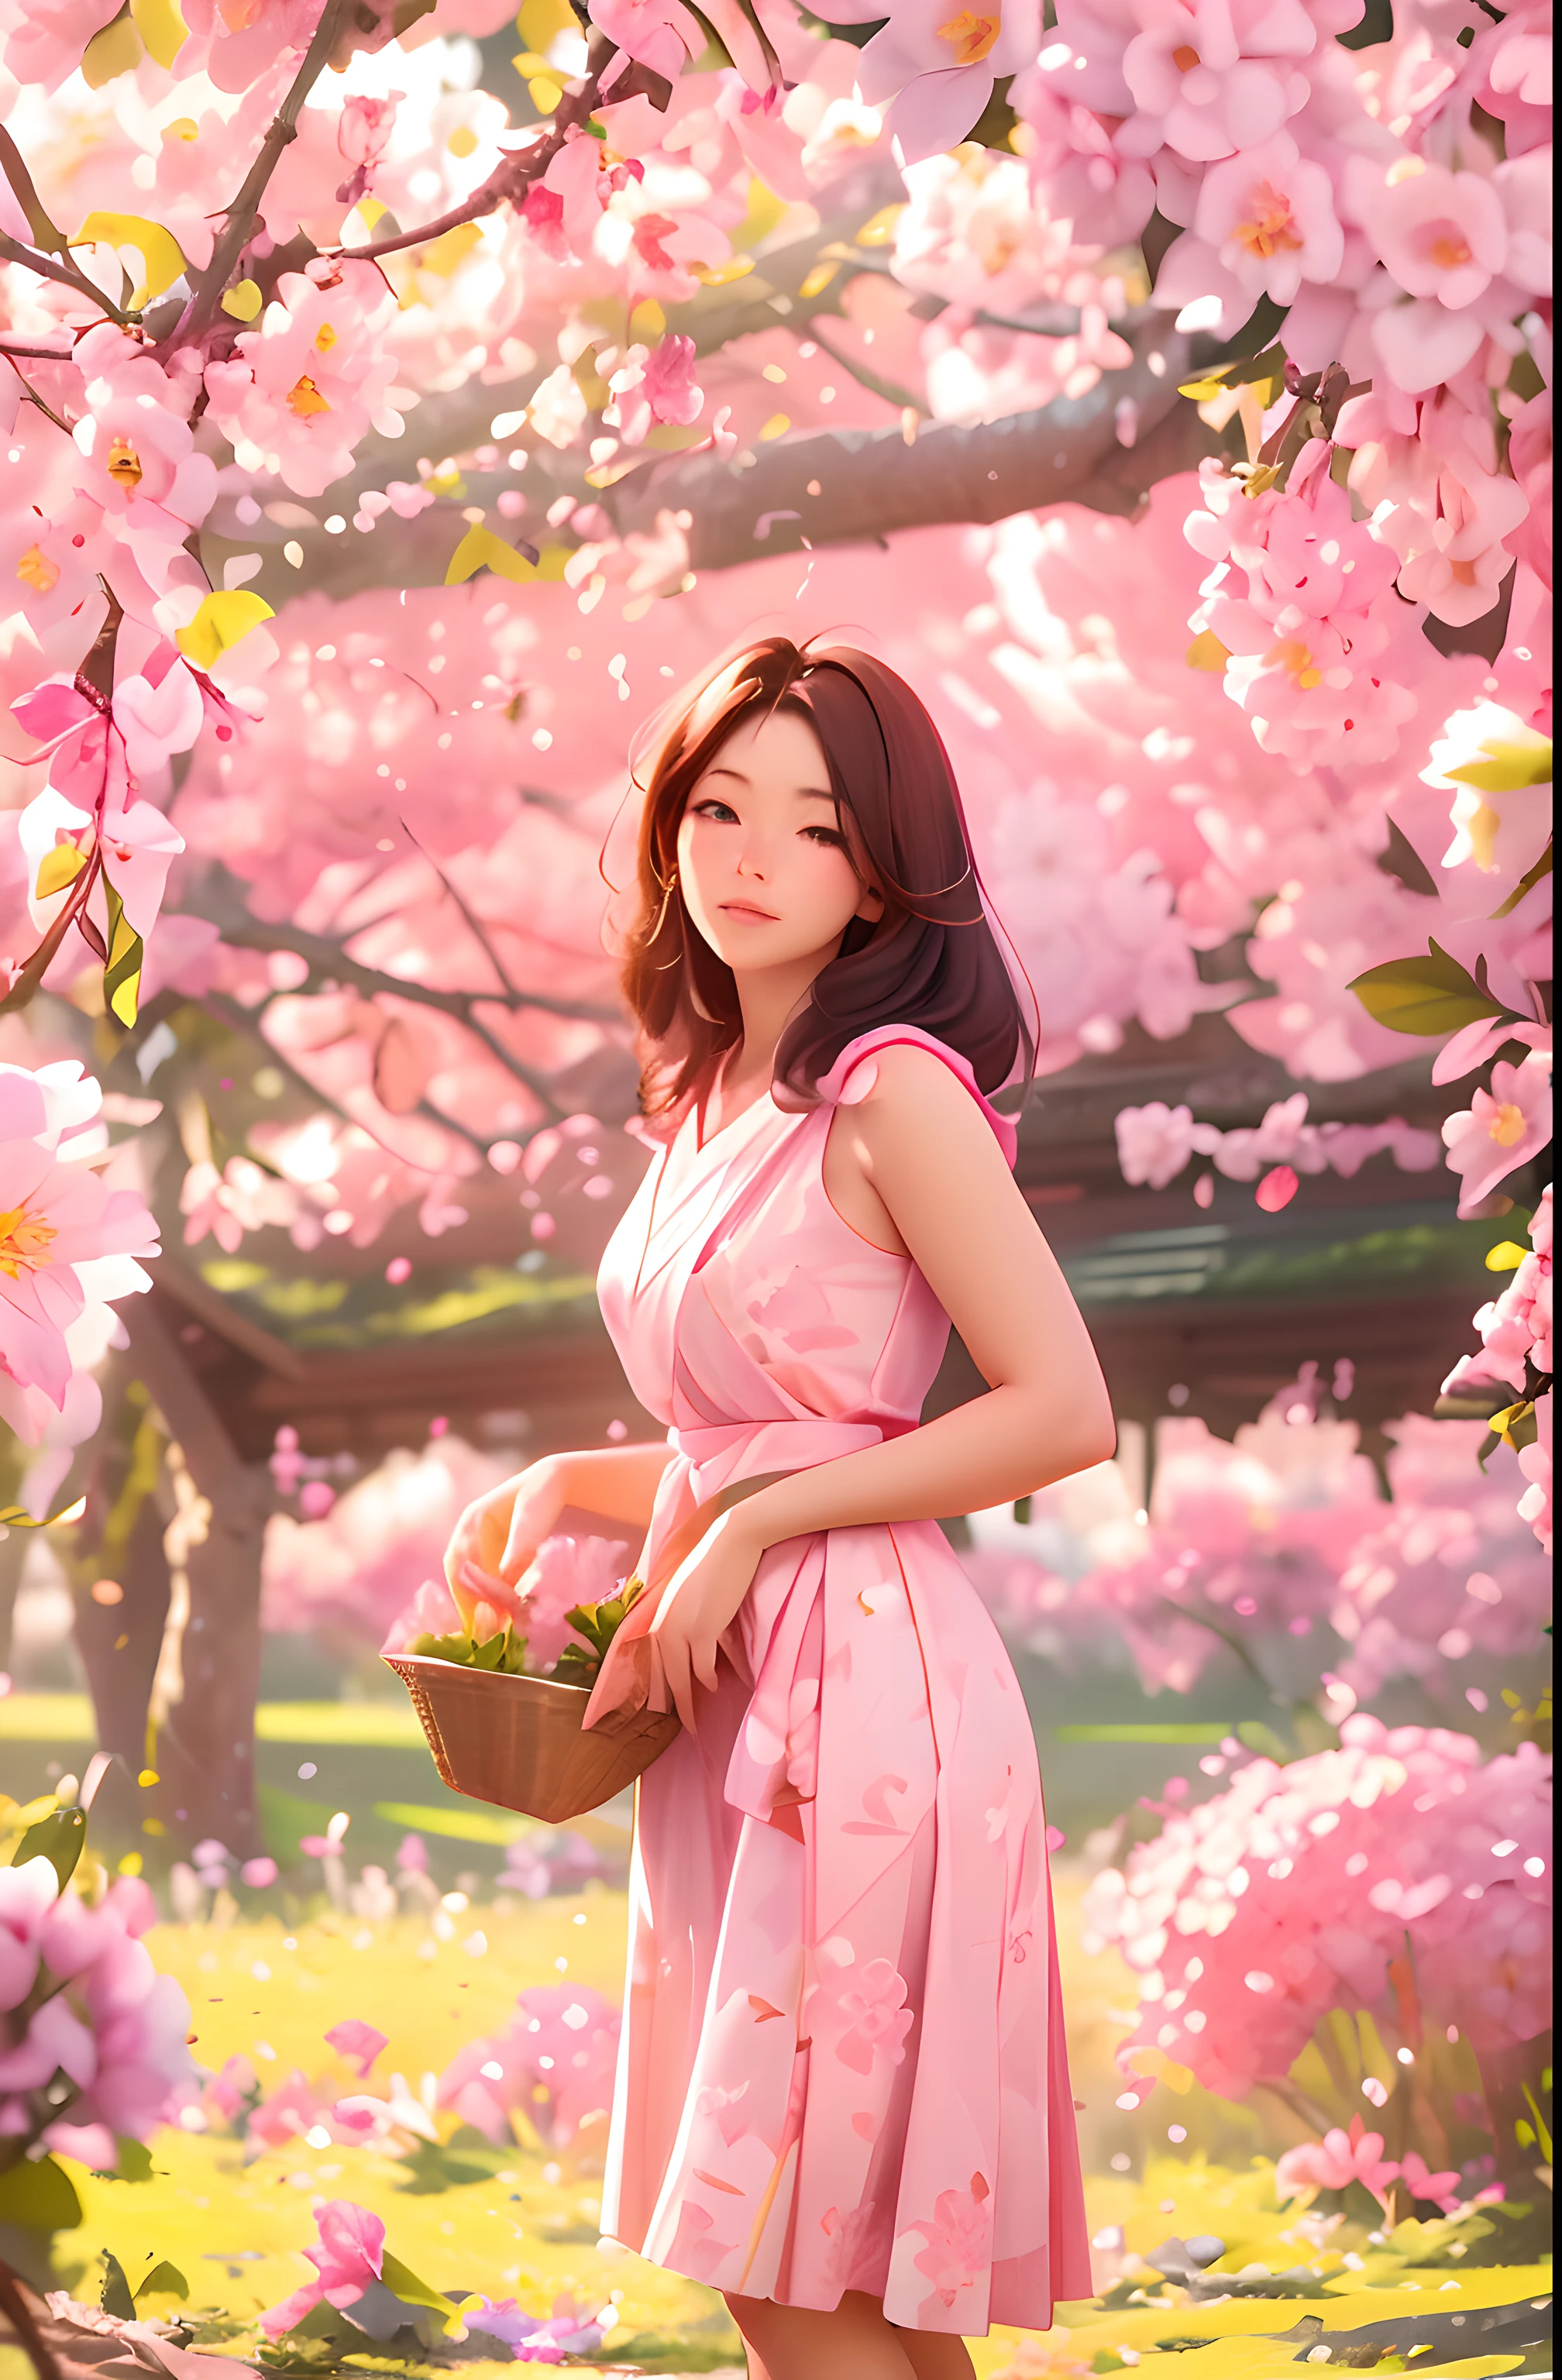 Uma bela mulher agricultora de 30 anos colhendo flores de Sakura, postura em pé, vestindo um rebanho japonês rosa e branco, feminine form, lote de flores Sakura em galhos, luz da manhã